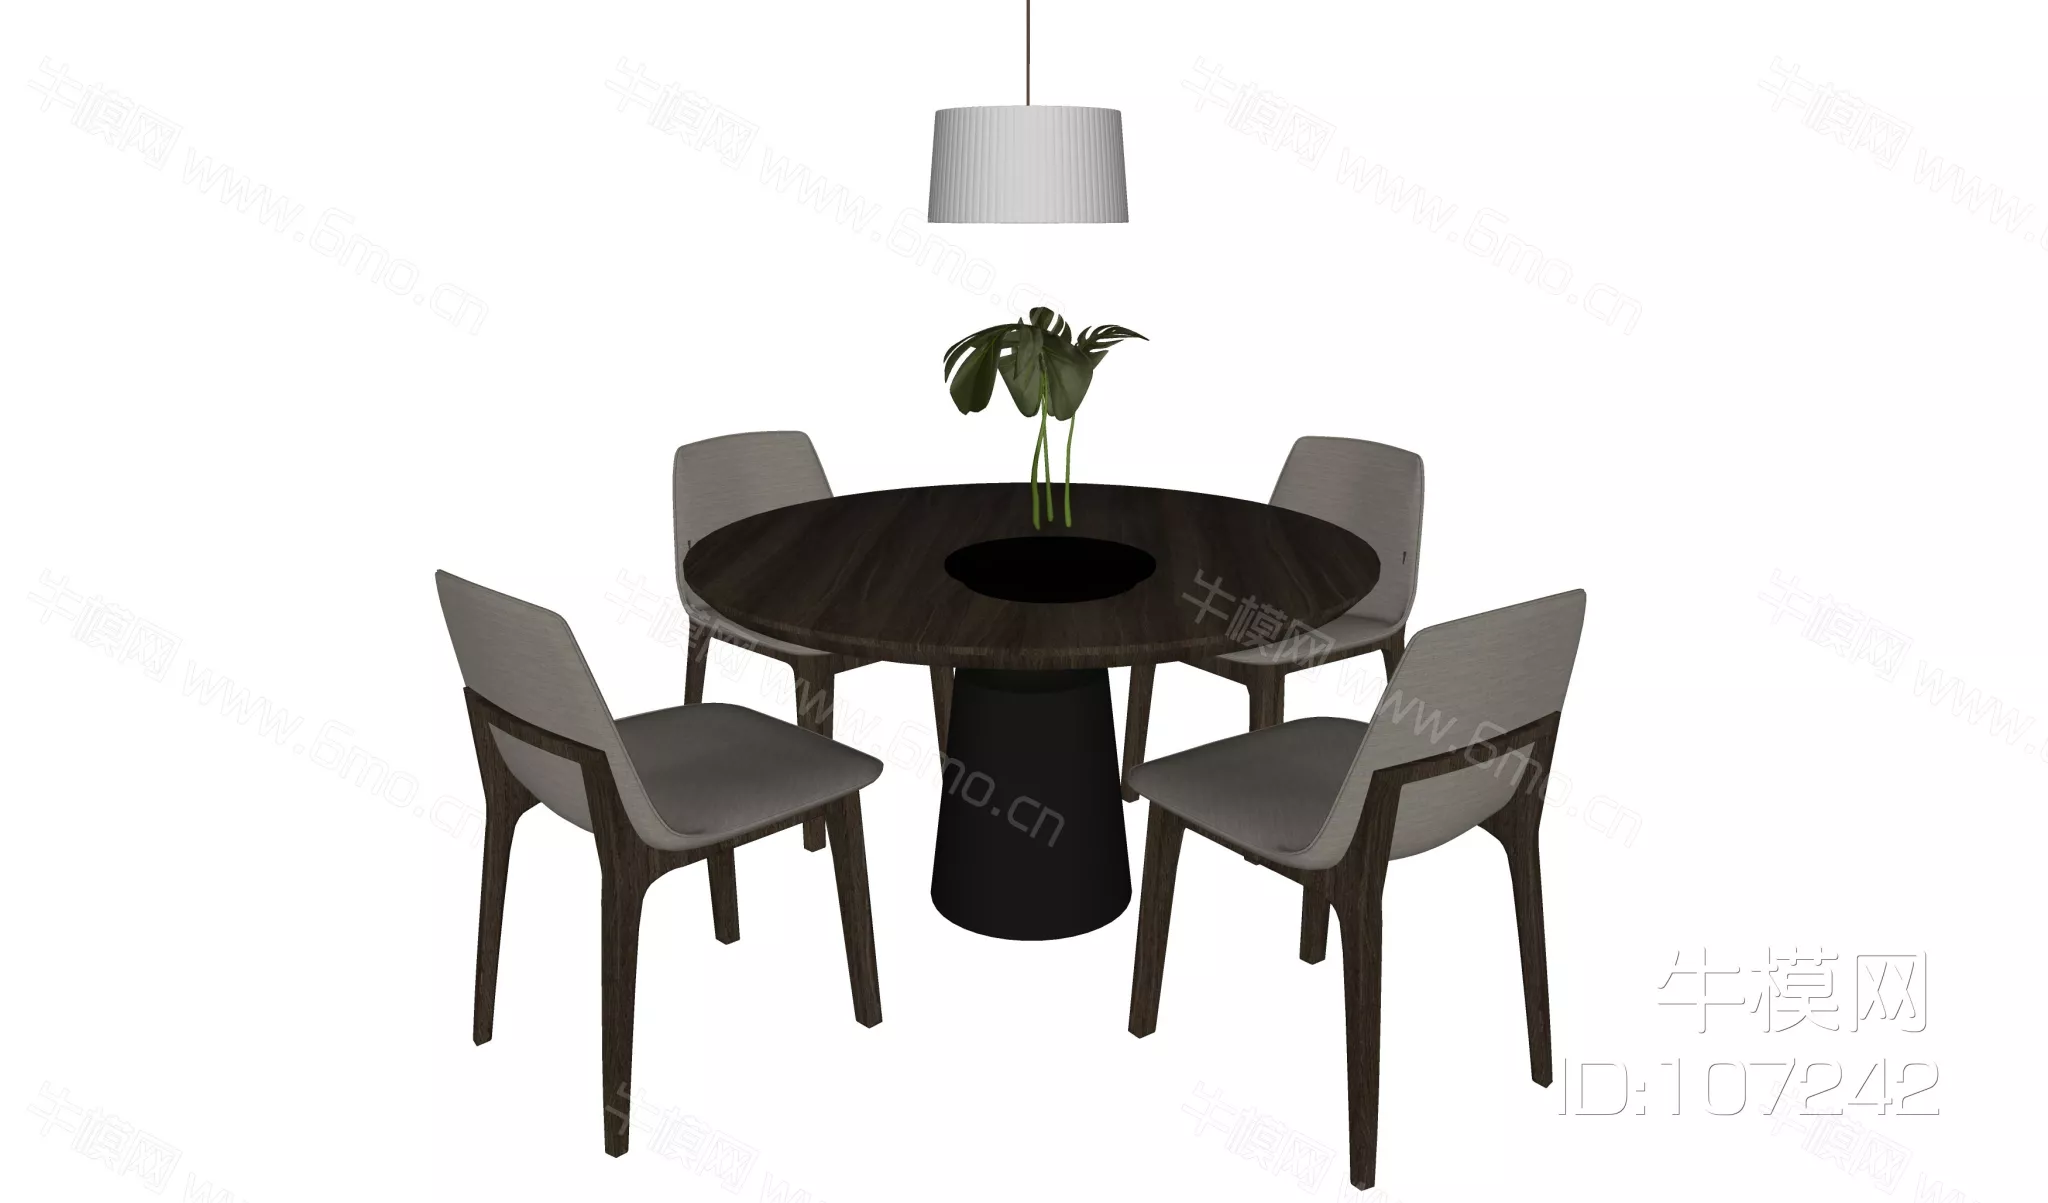 MODERN DINING TABLE SET - SKETCHUP 3D MODEL - ENSCAPE - 107242